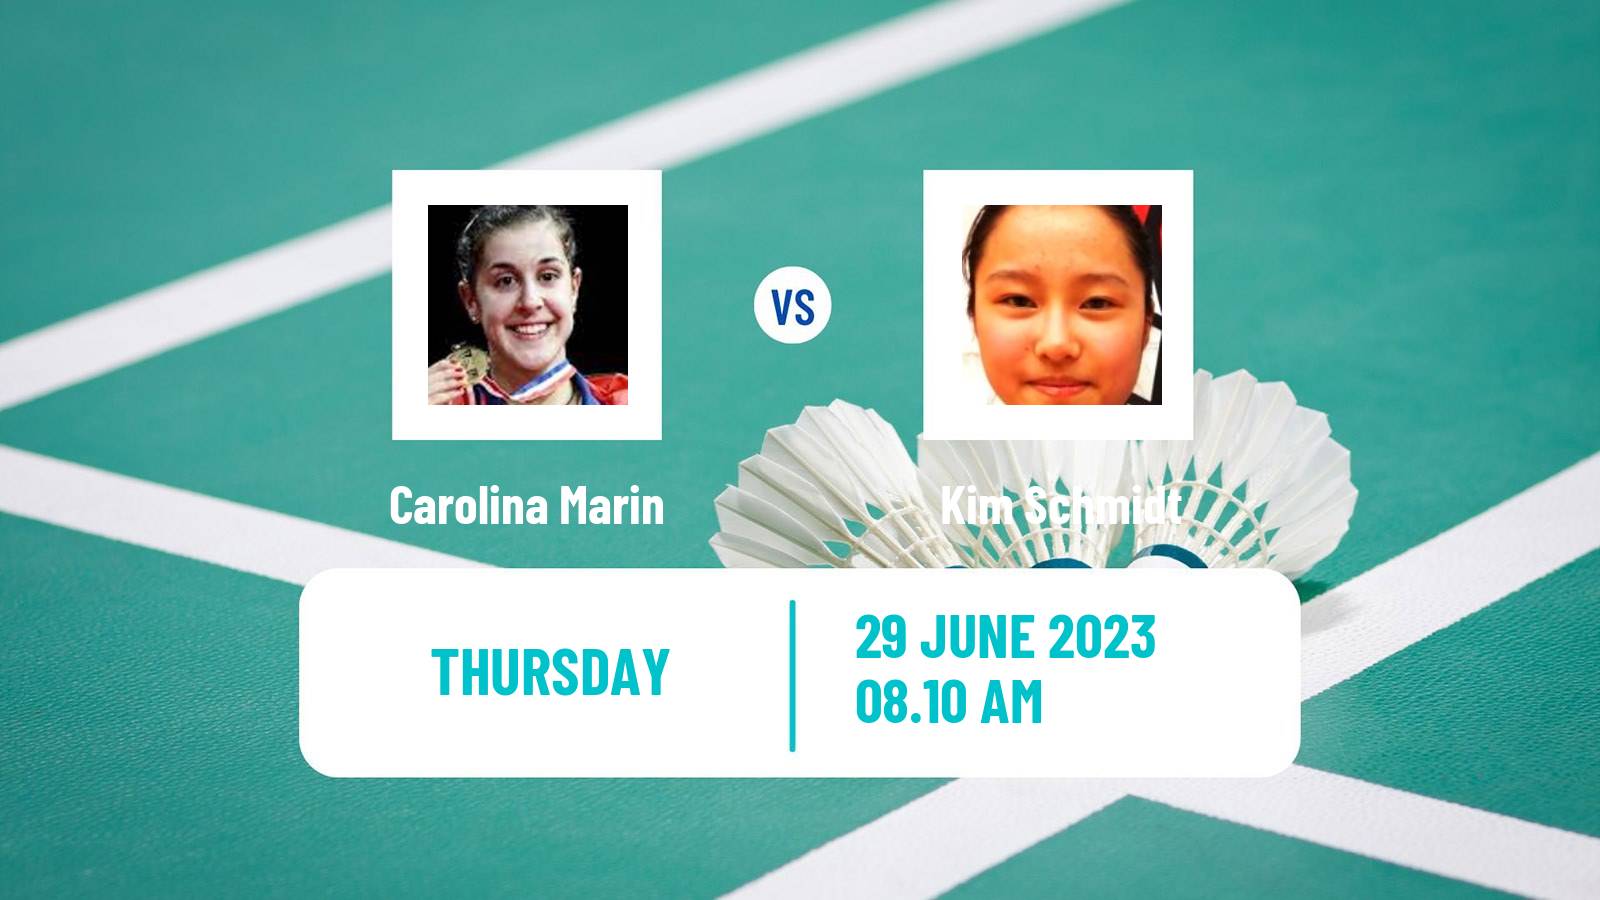 Badminton BWF European Games Women Carolina Marin - Kim Schmidt